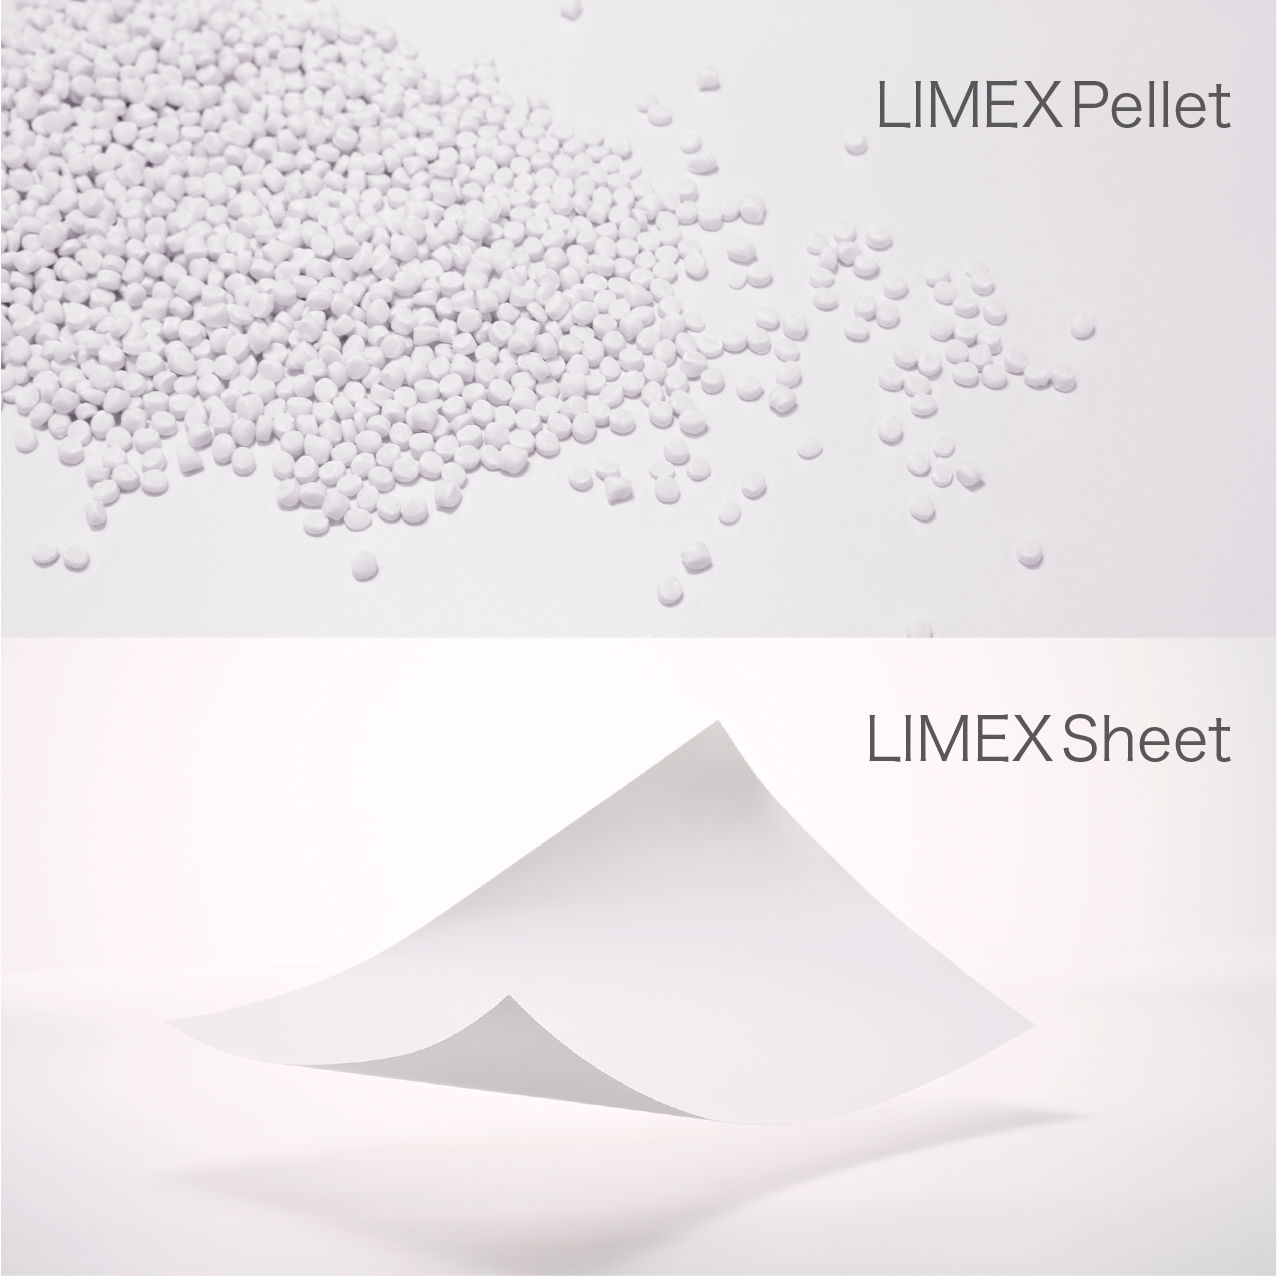 LIMEX PelletとLIMEX Sheetの画像